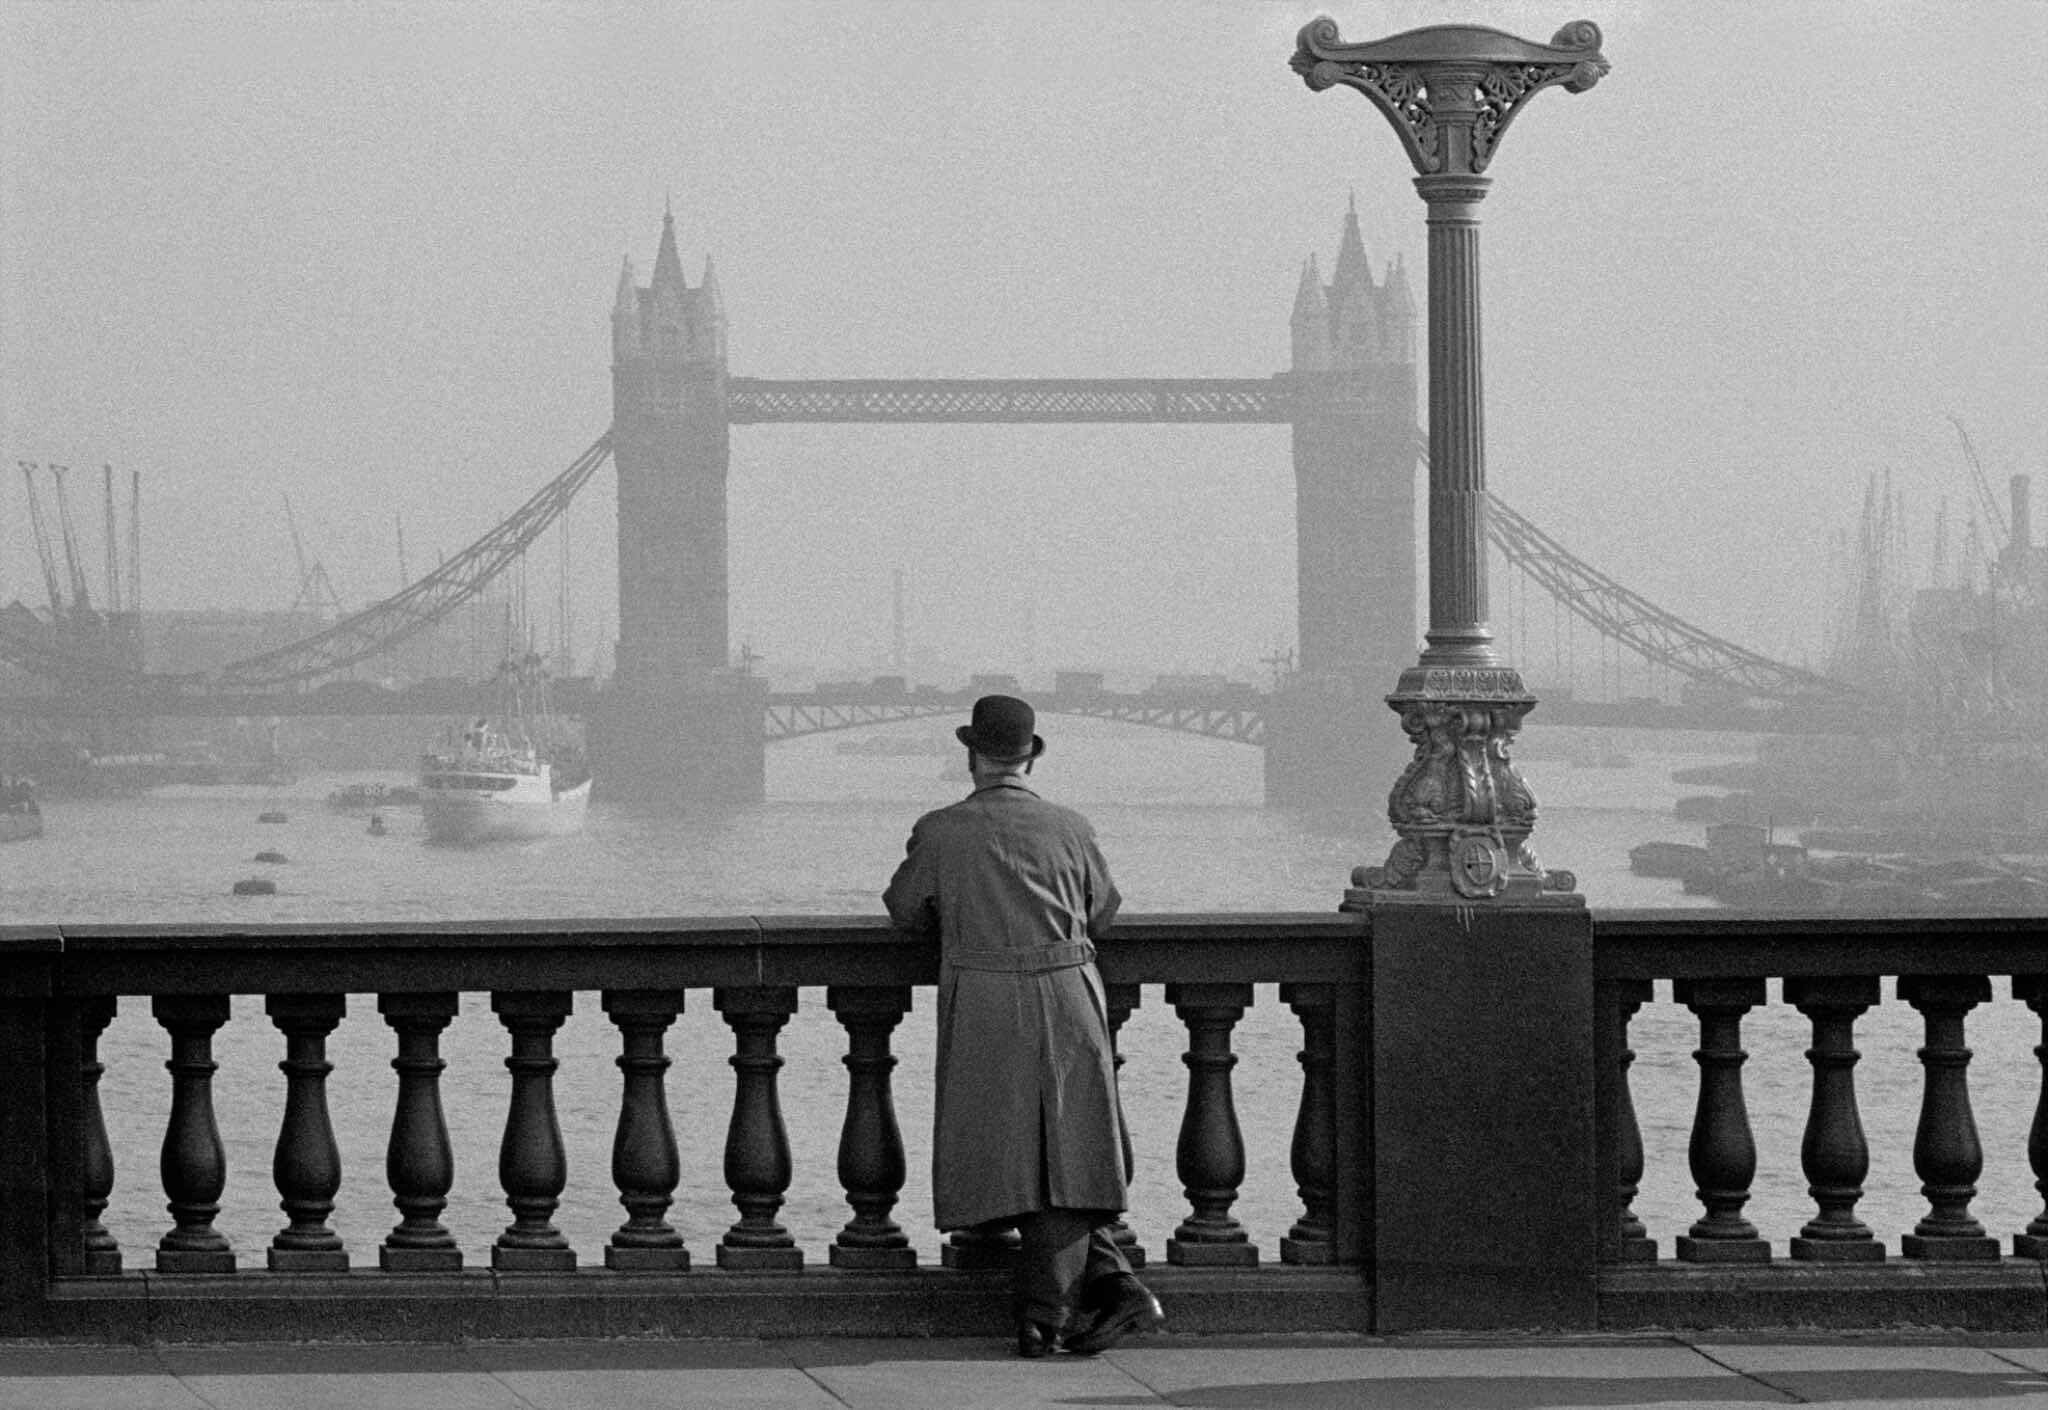 Лондон, Тауэрский мост, вид с Лондонского моста, 1955 год. Фотограф Франк Хорват